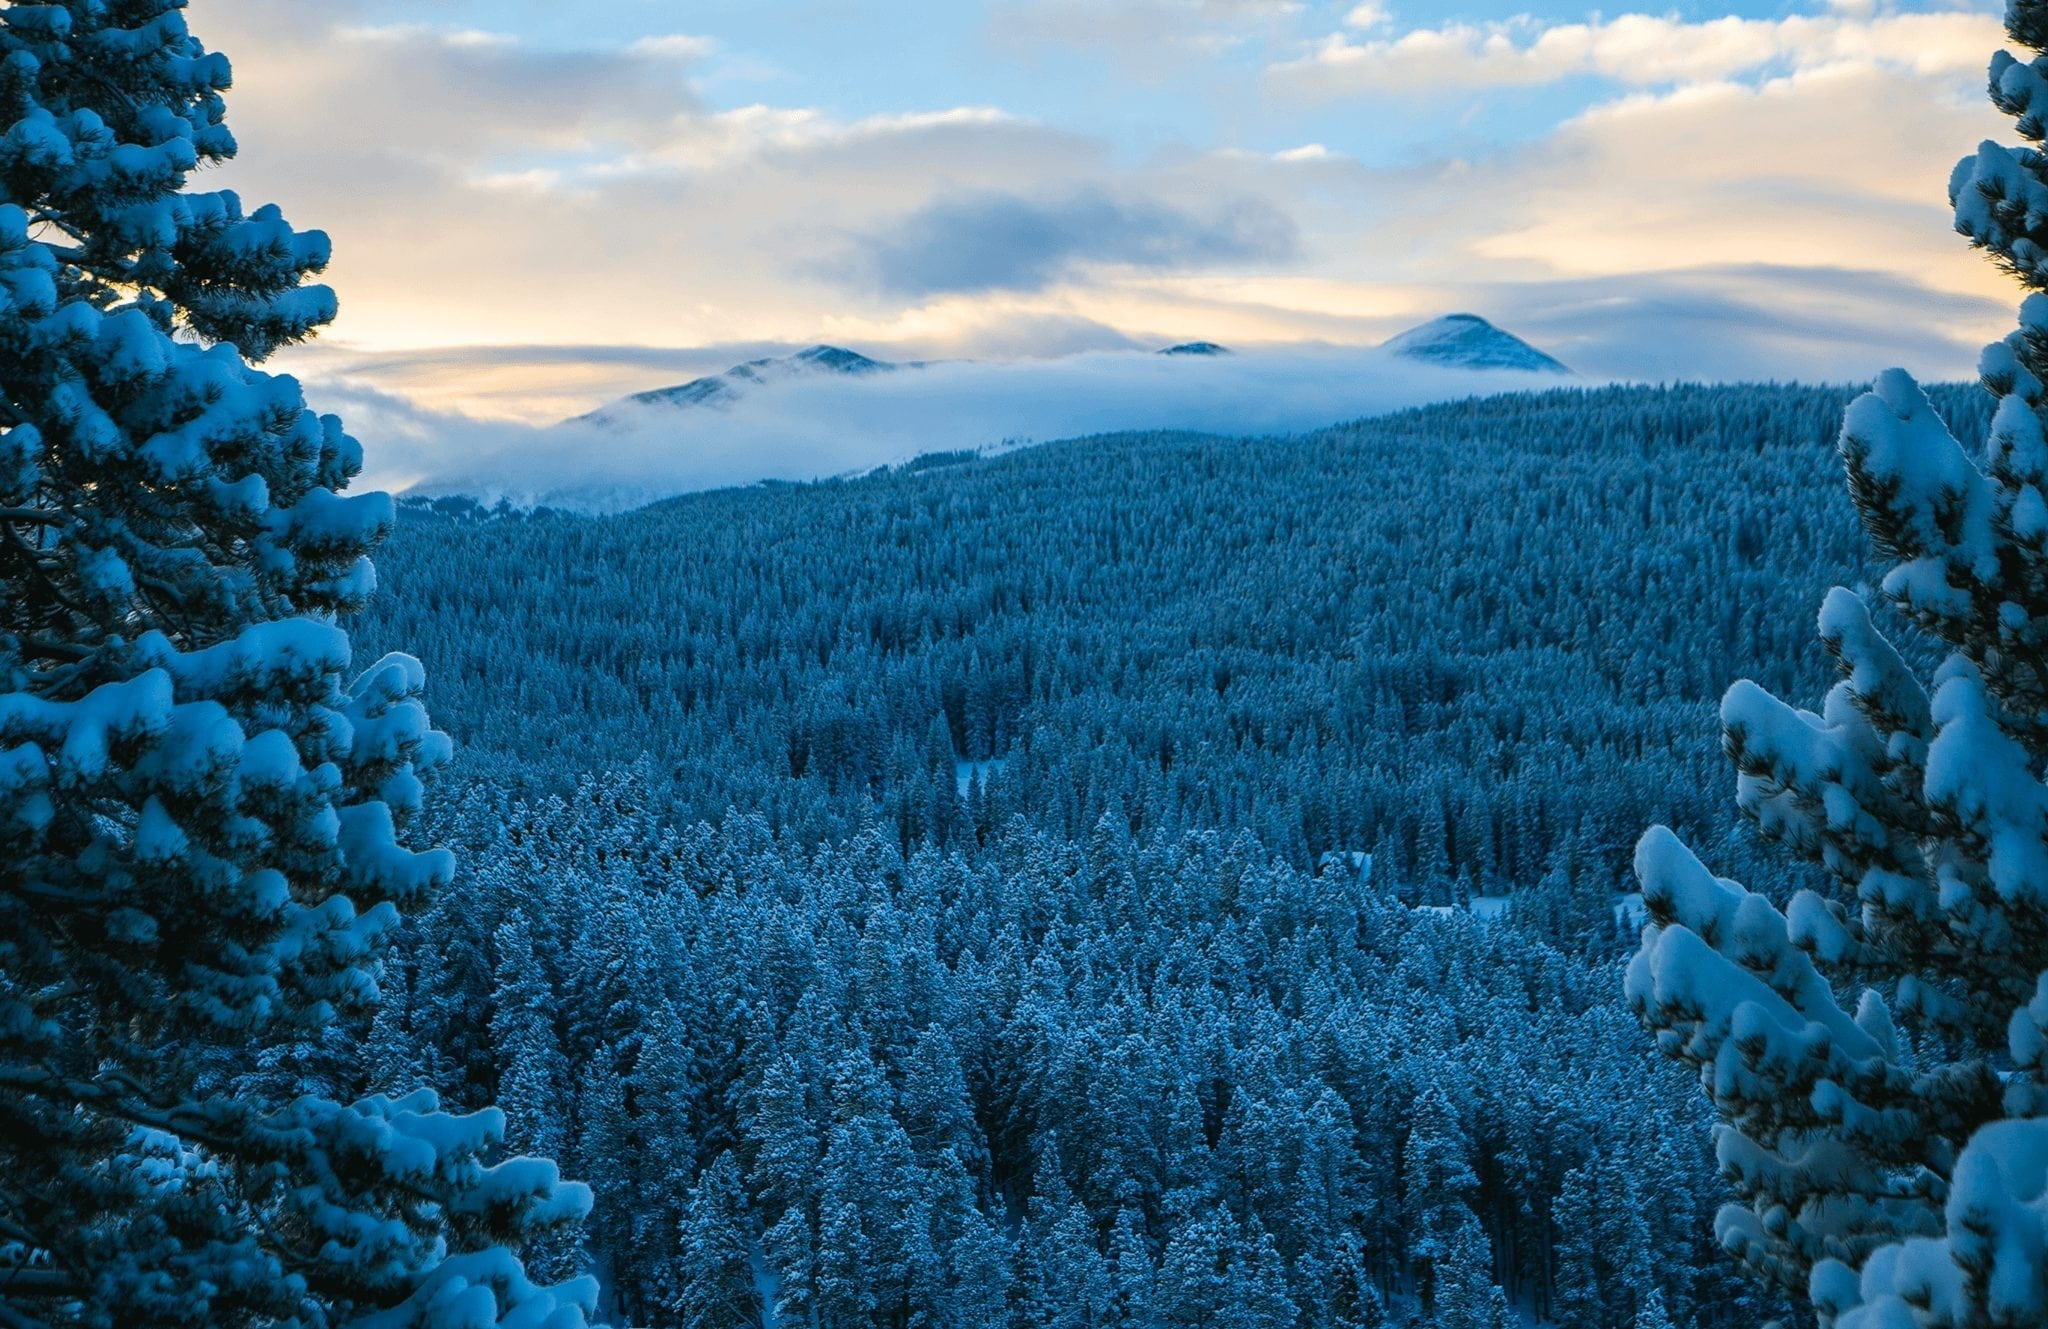 Winter sunrise in the Breckenridge, Colorado mountains